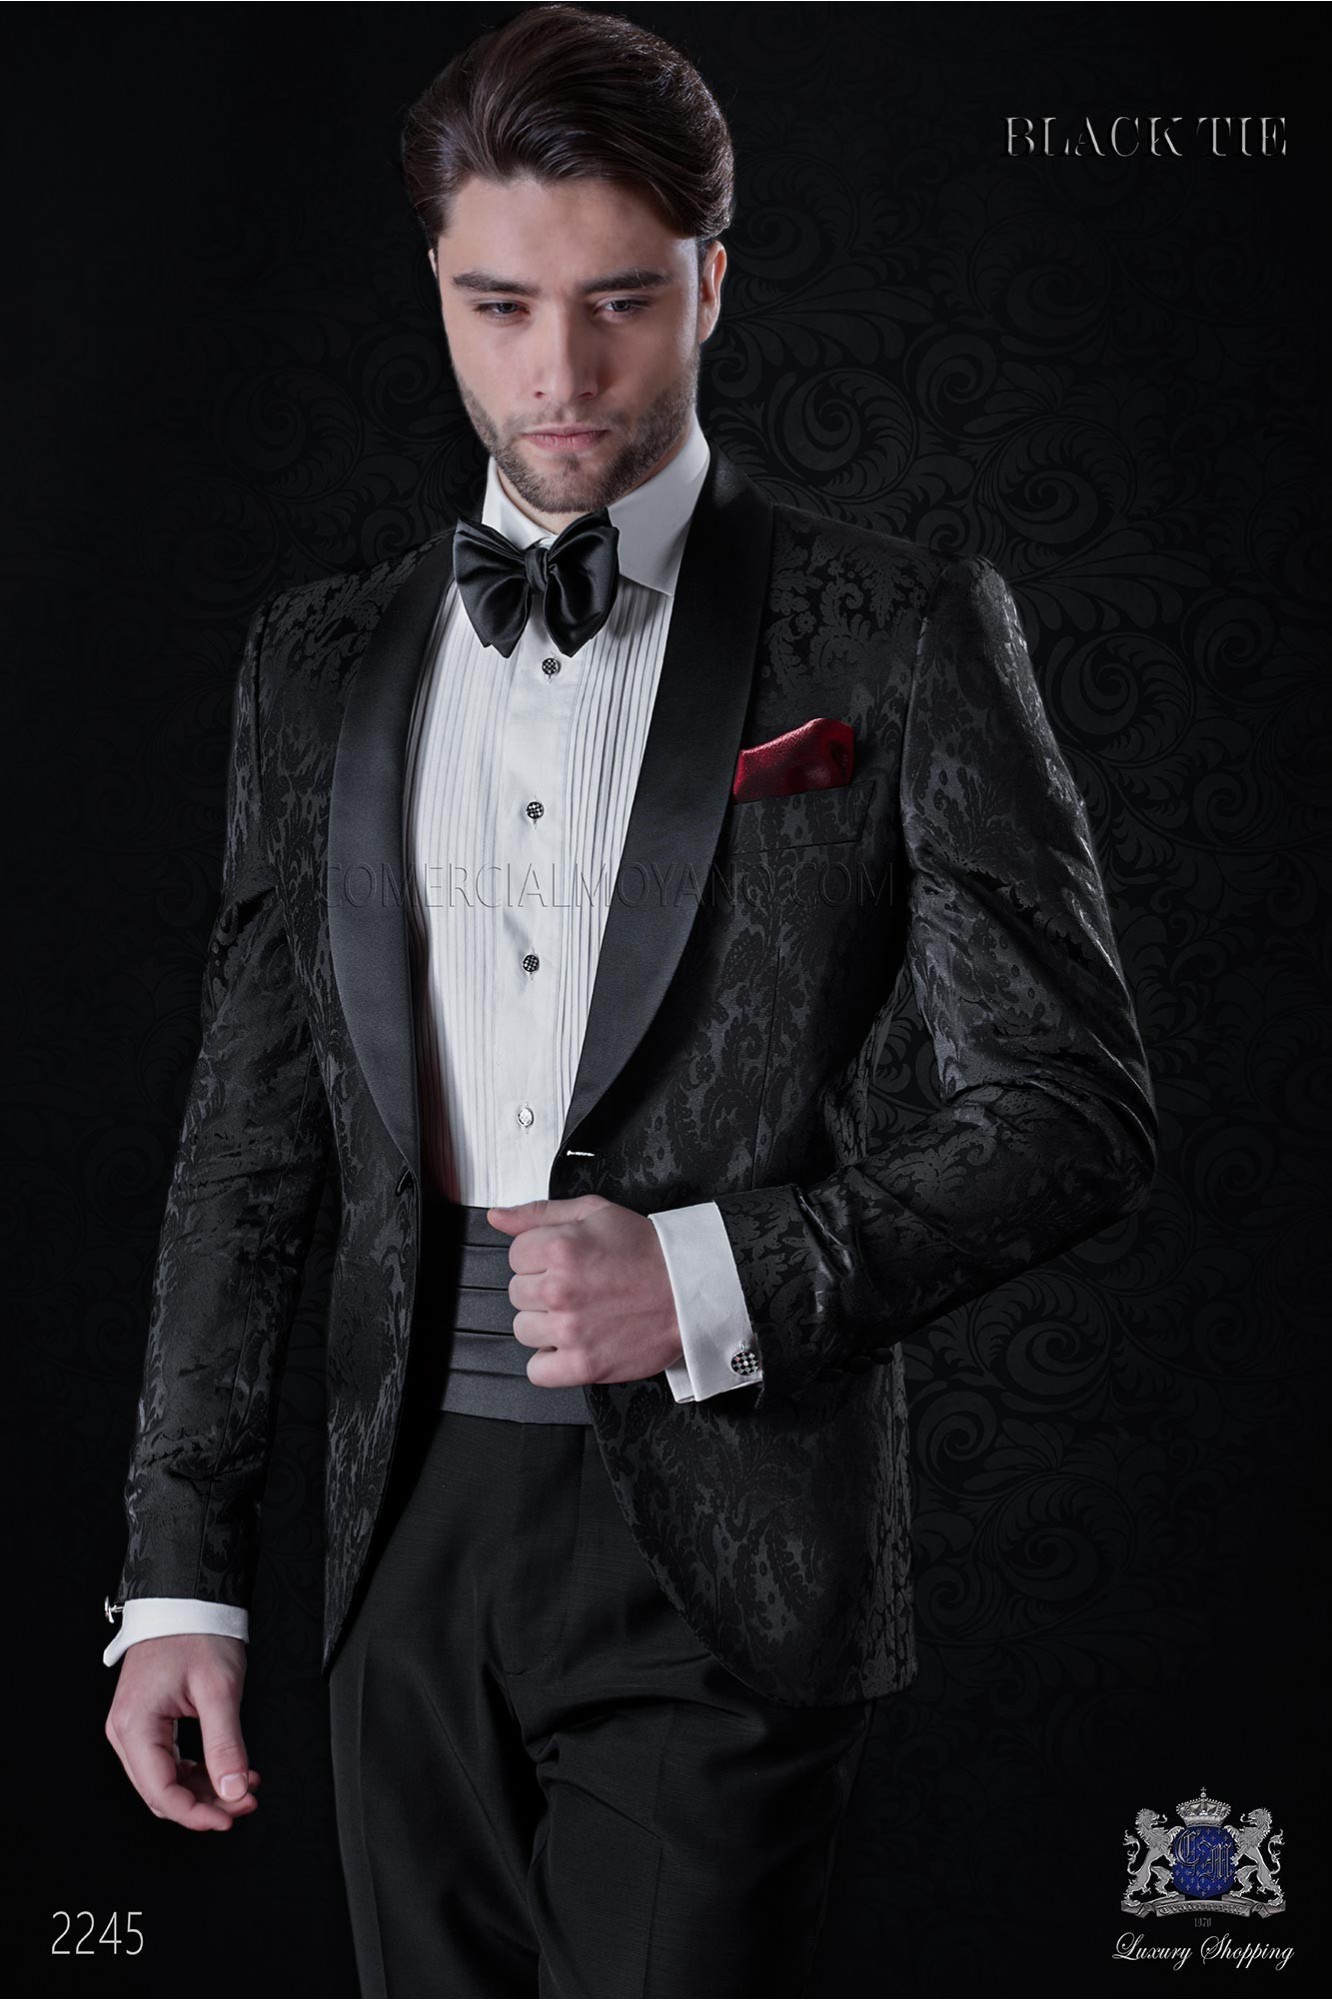 Esmoquin italiano de jacquard negro en mixto seda modelo: 2245 Mario Moyano colección Black Tie